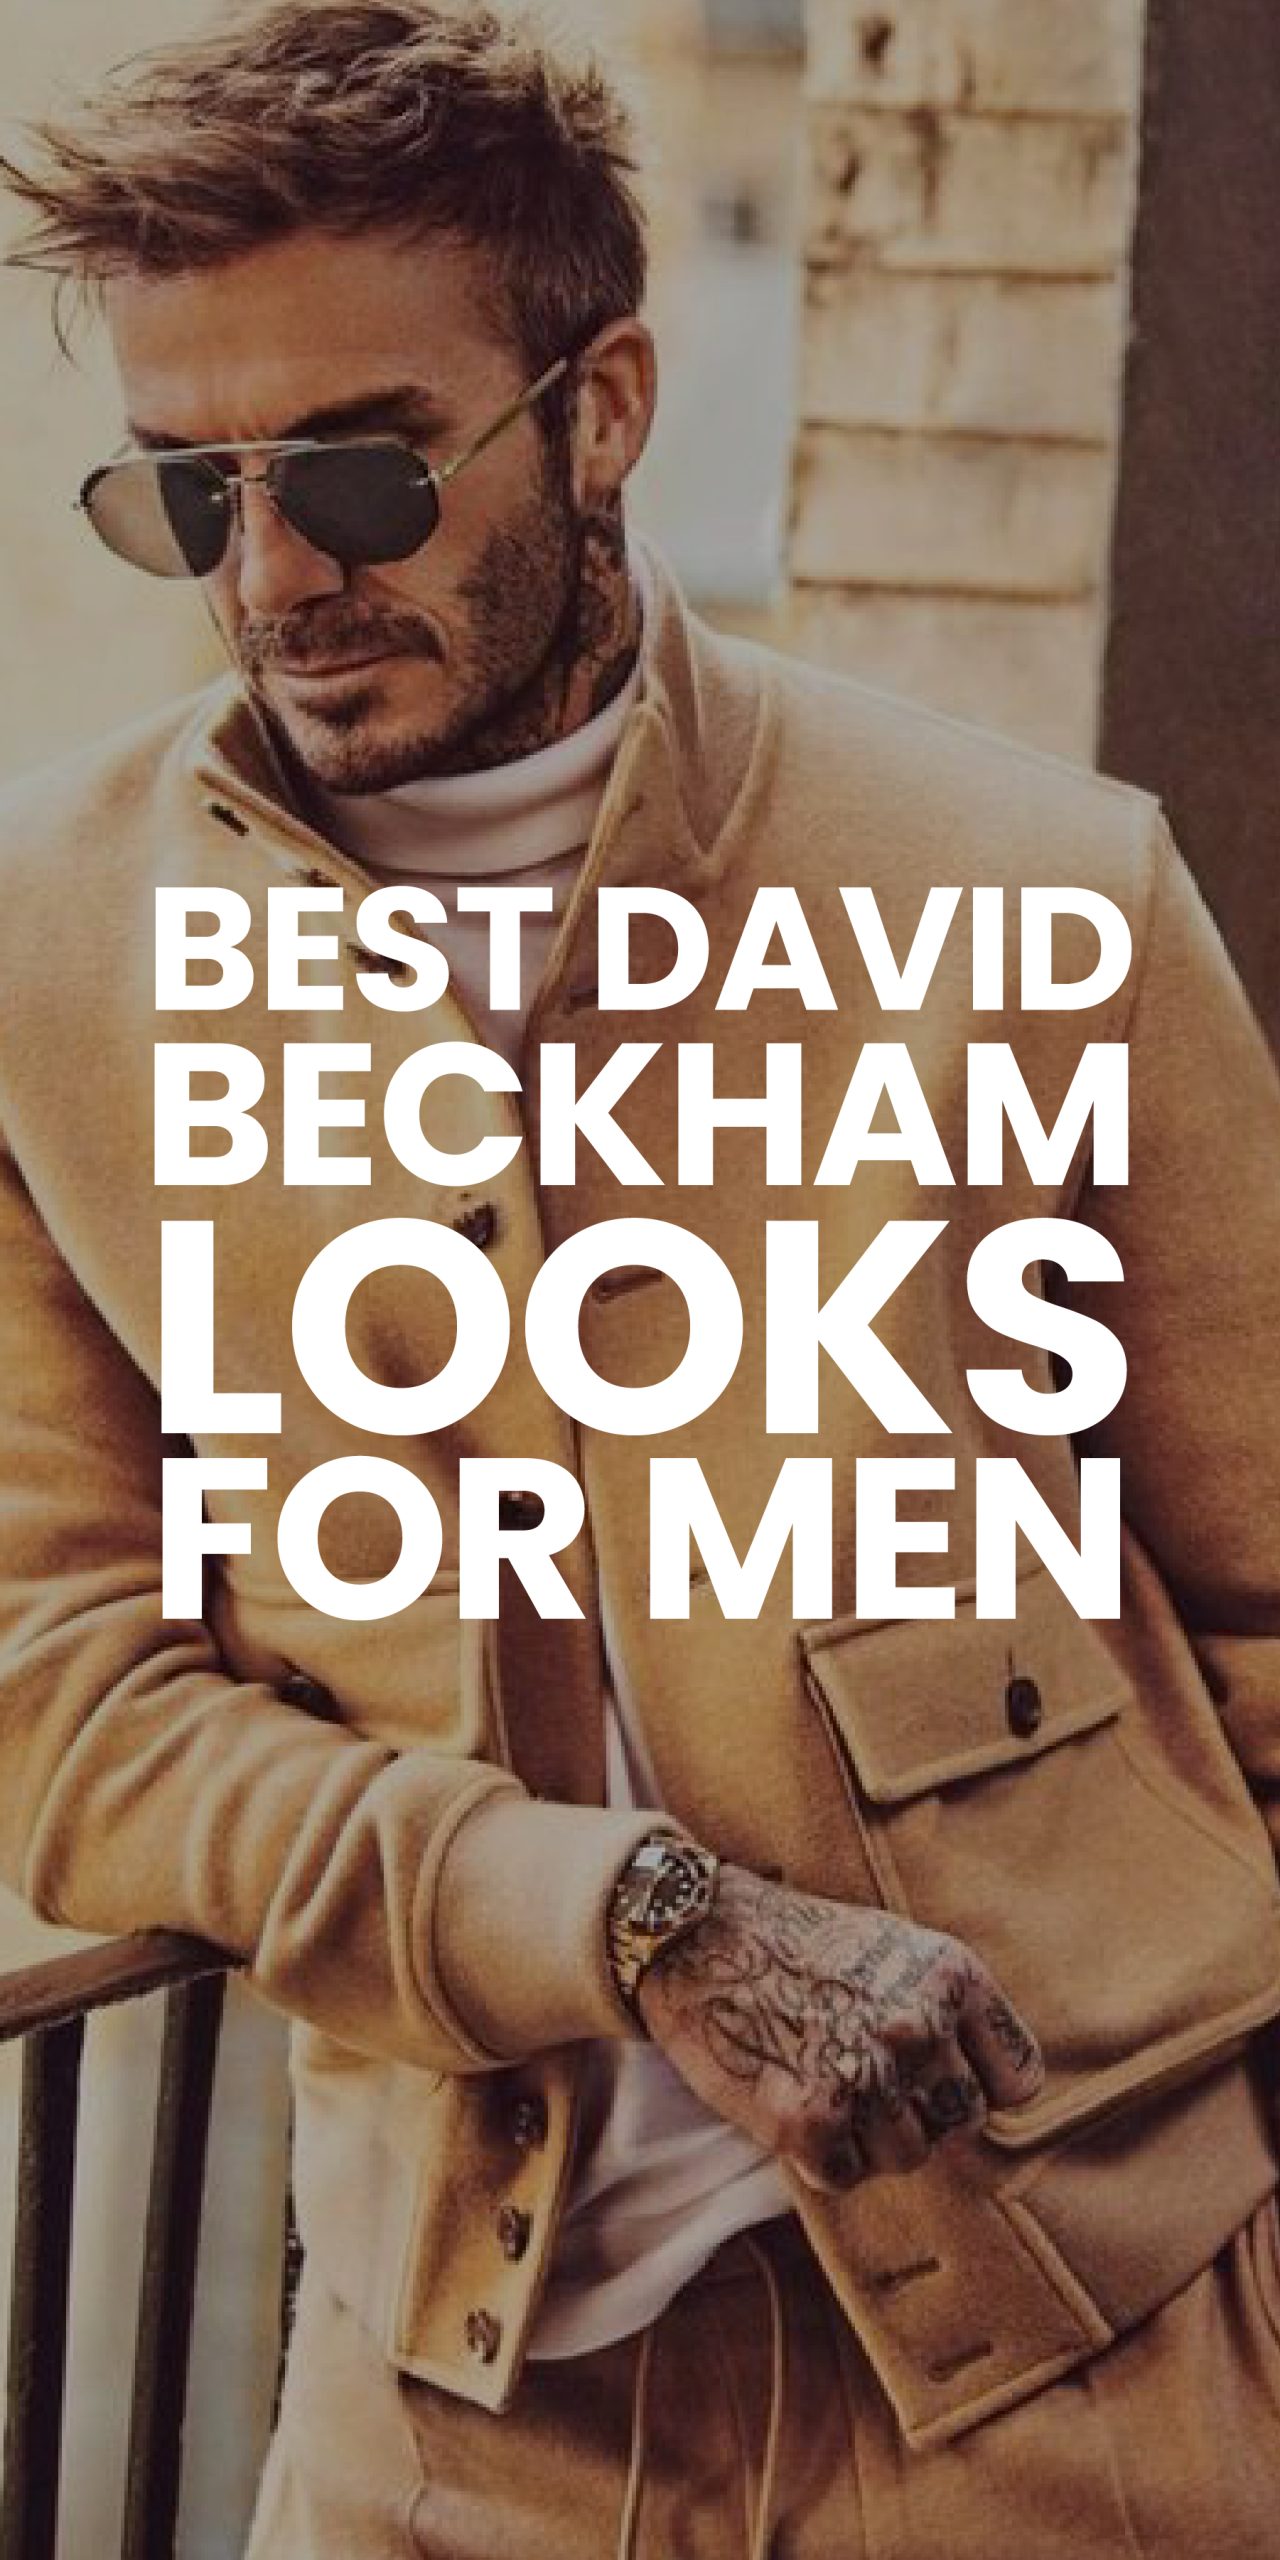 BEST DAVID BECKHAM LOOKS FOR MEN